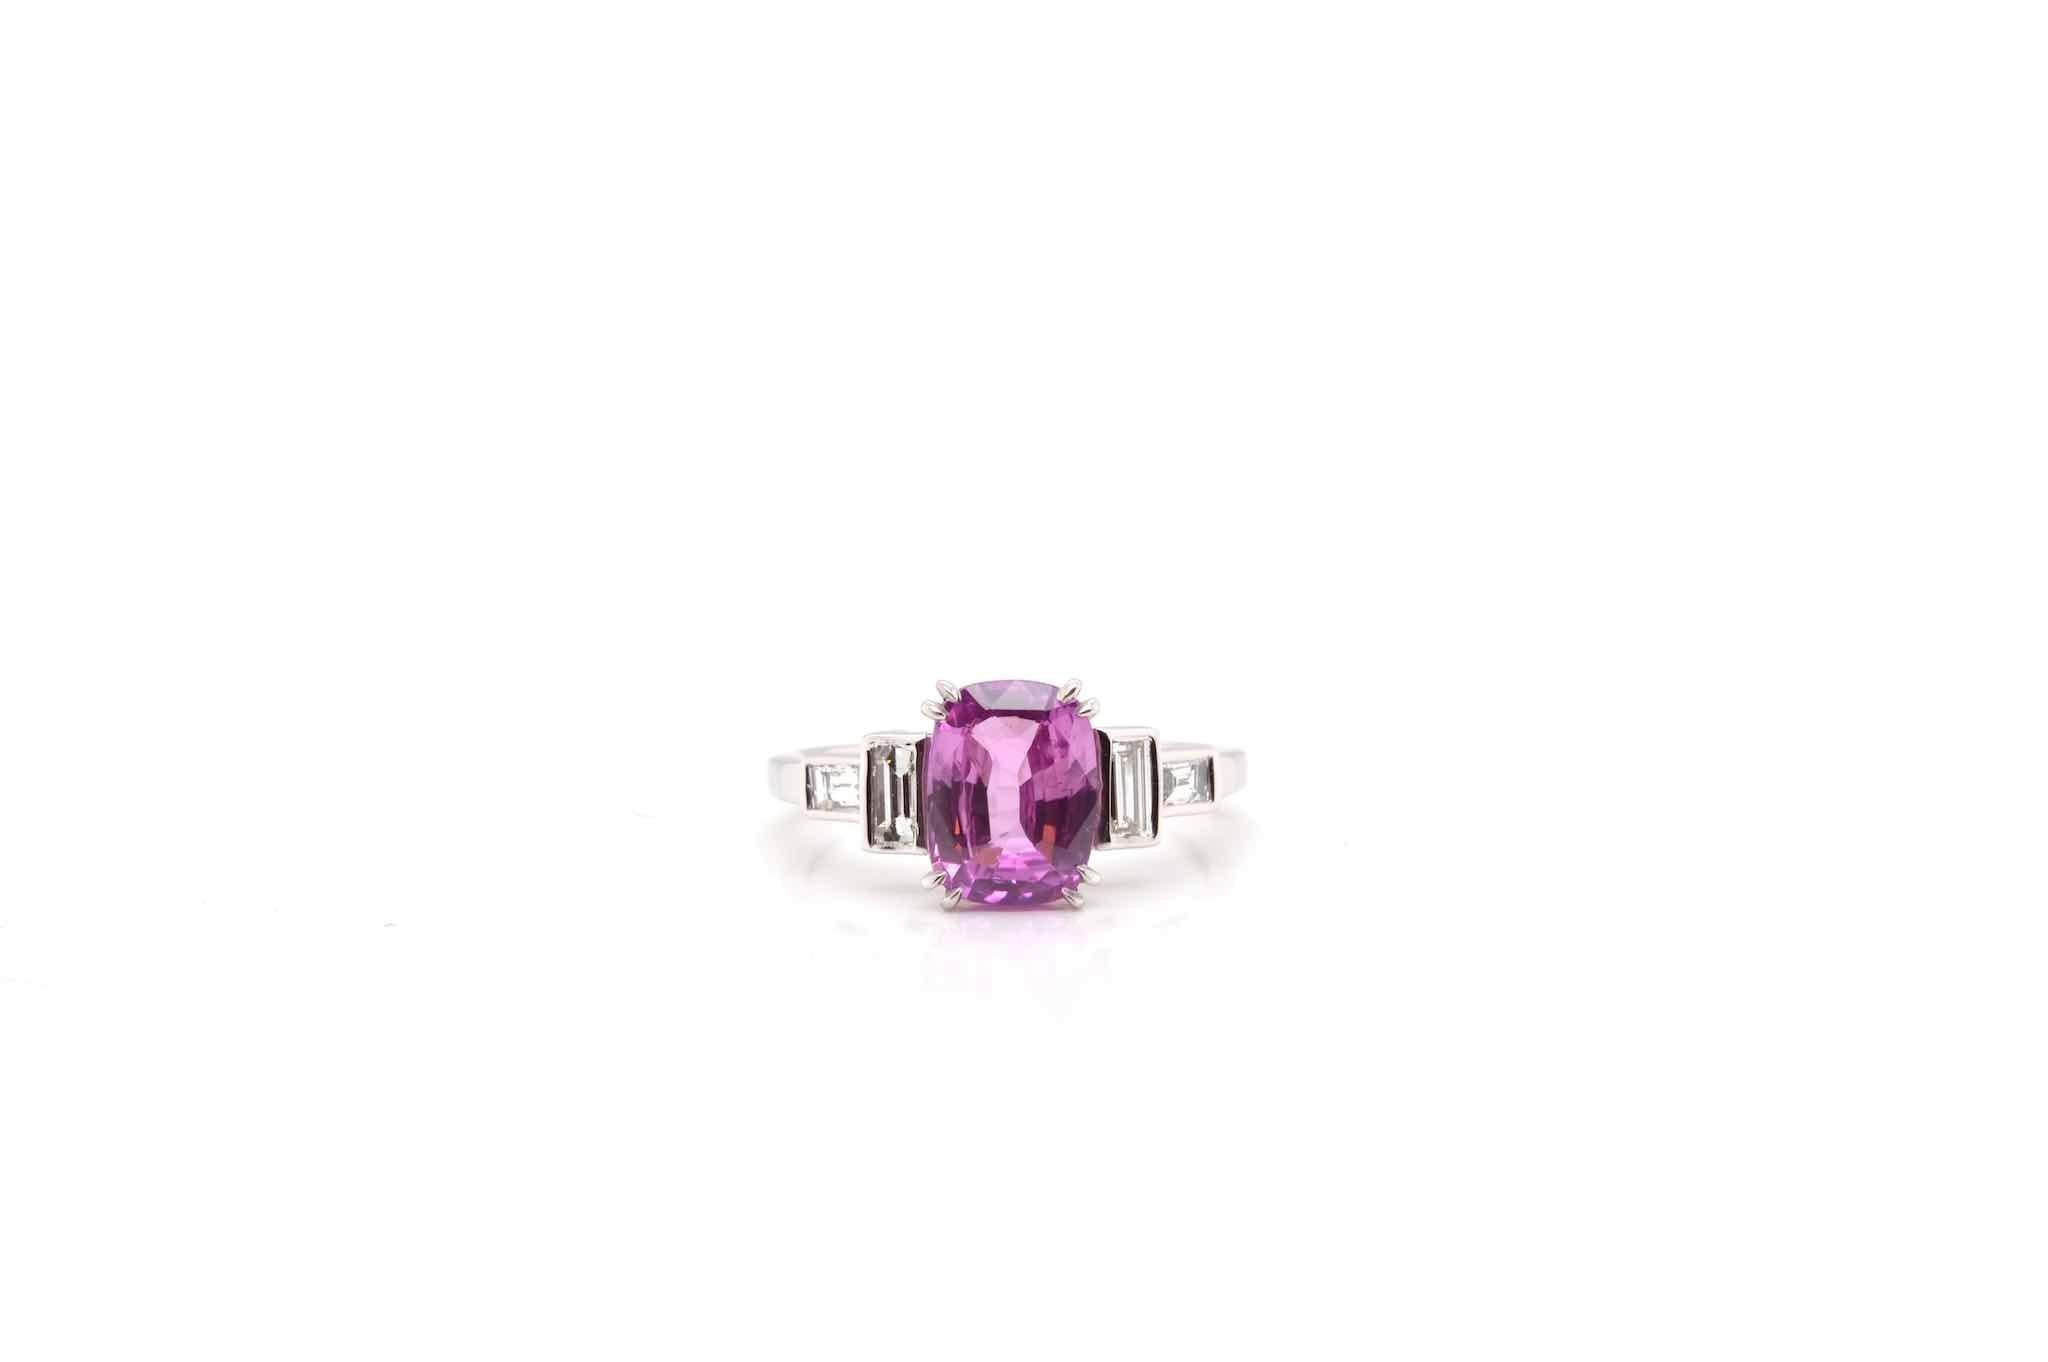 Steine: 2,50 Karat rosa Saphir und Baguette-Diamanten
mit einem Gesamtkaratgewicht von 0,33 Karat.
MATERIAL: 18k Weißgold
Gewicht: 3.7 g
Größe: (freie Größenbestimmung)
Zertifikat
Bez.: 24762 / 23857